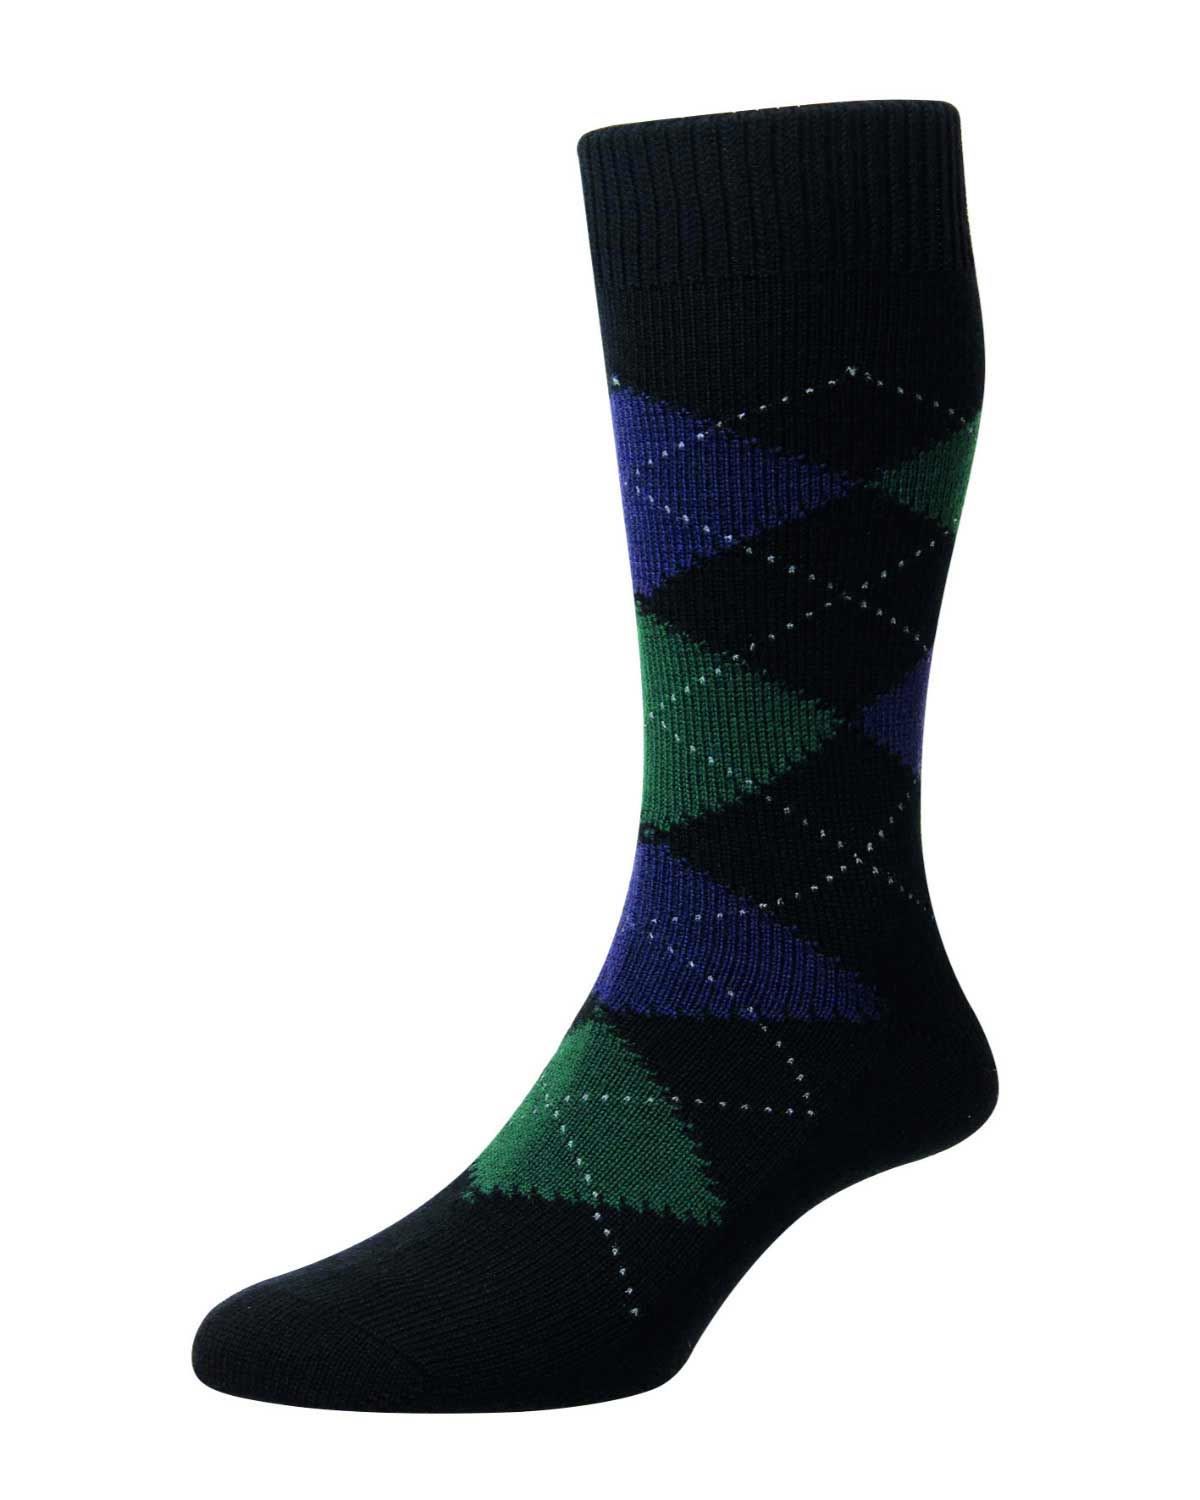 Wool blend Argyll Socks. Made from 70% Merino Wool, 30% Nylon.